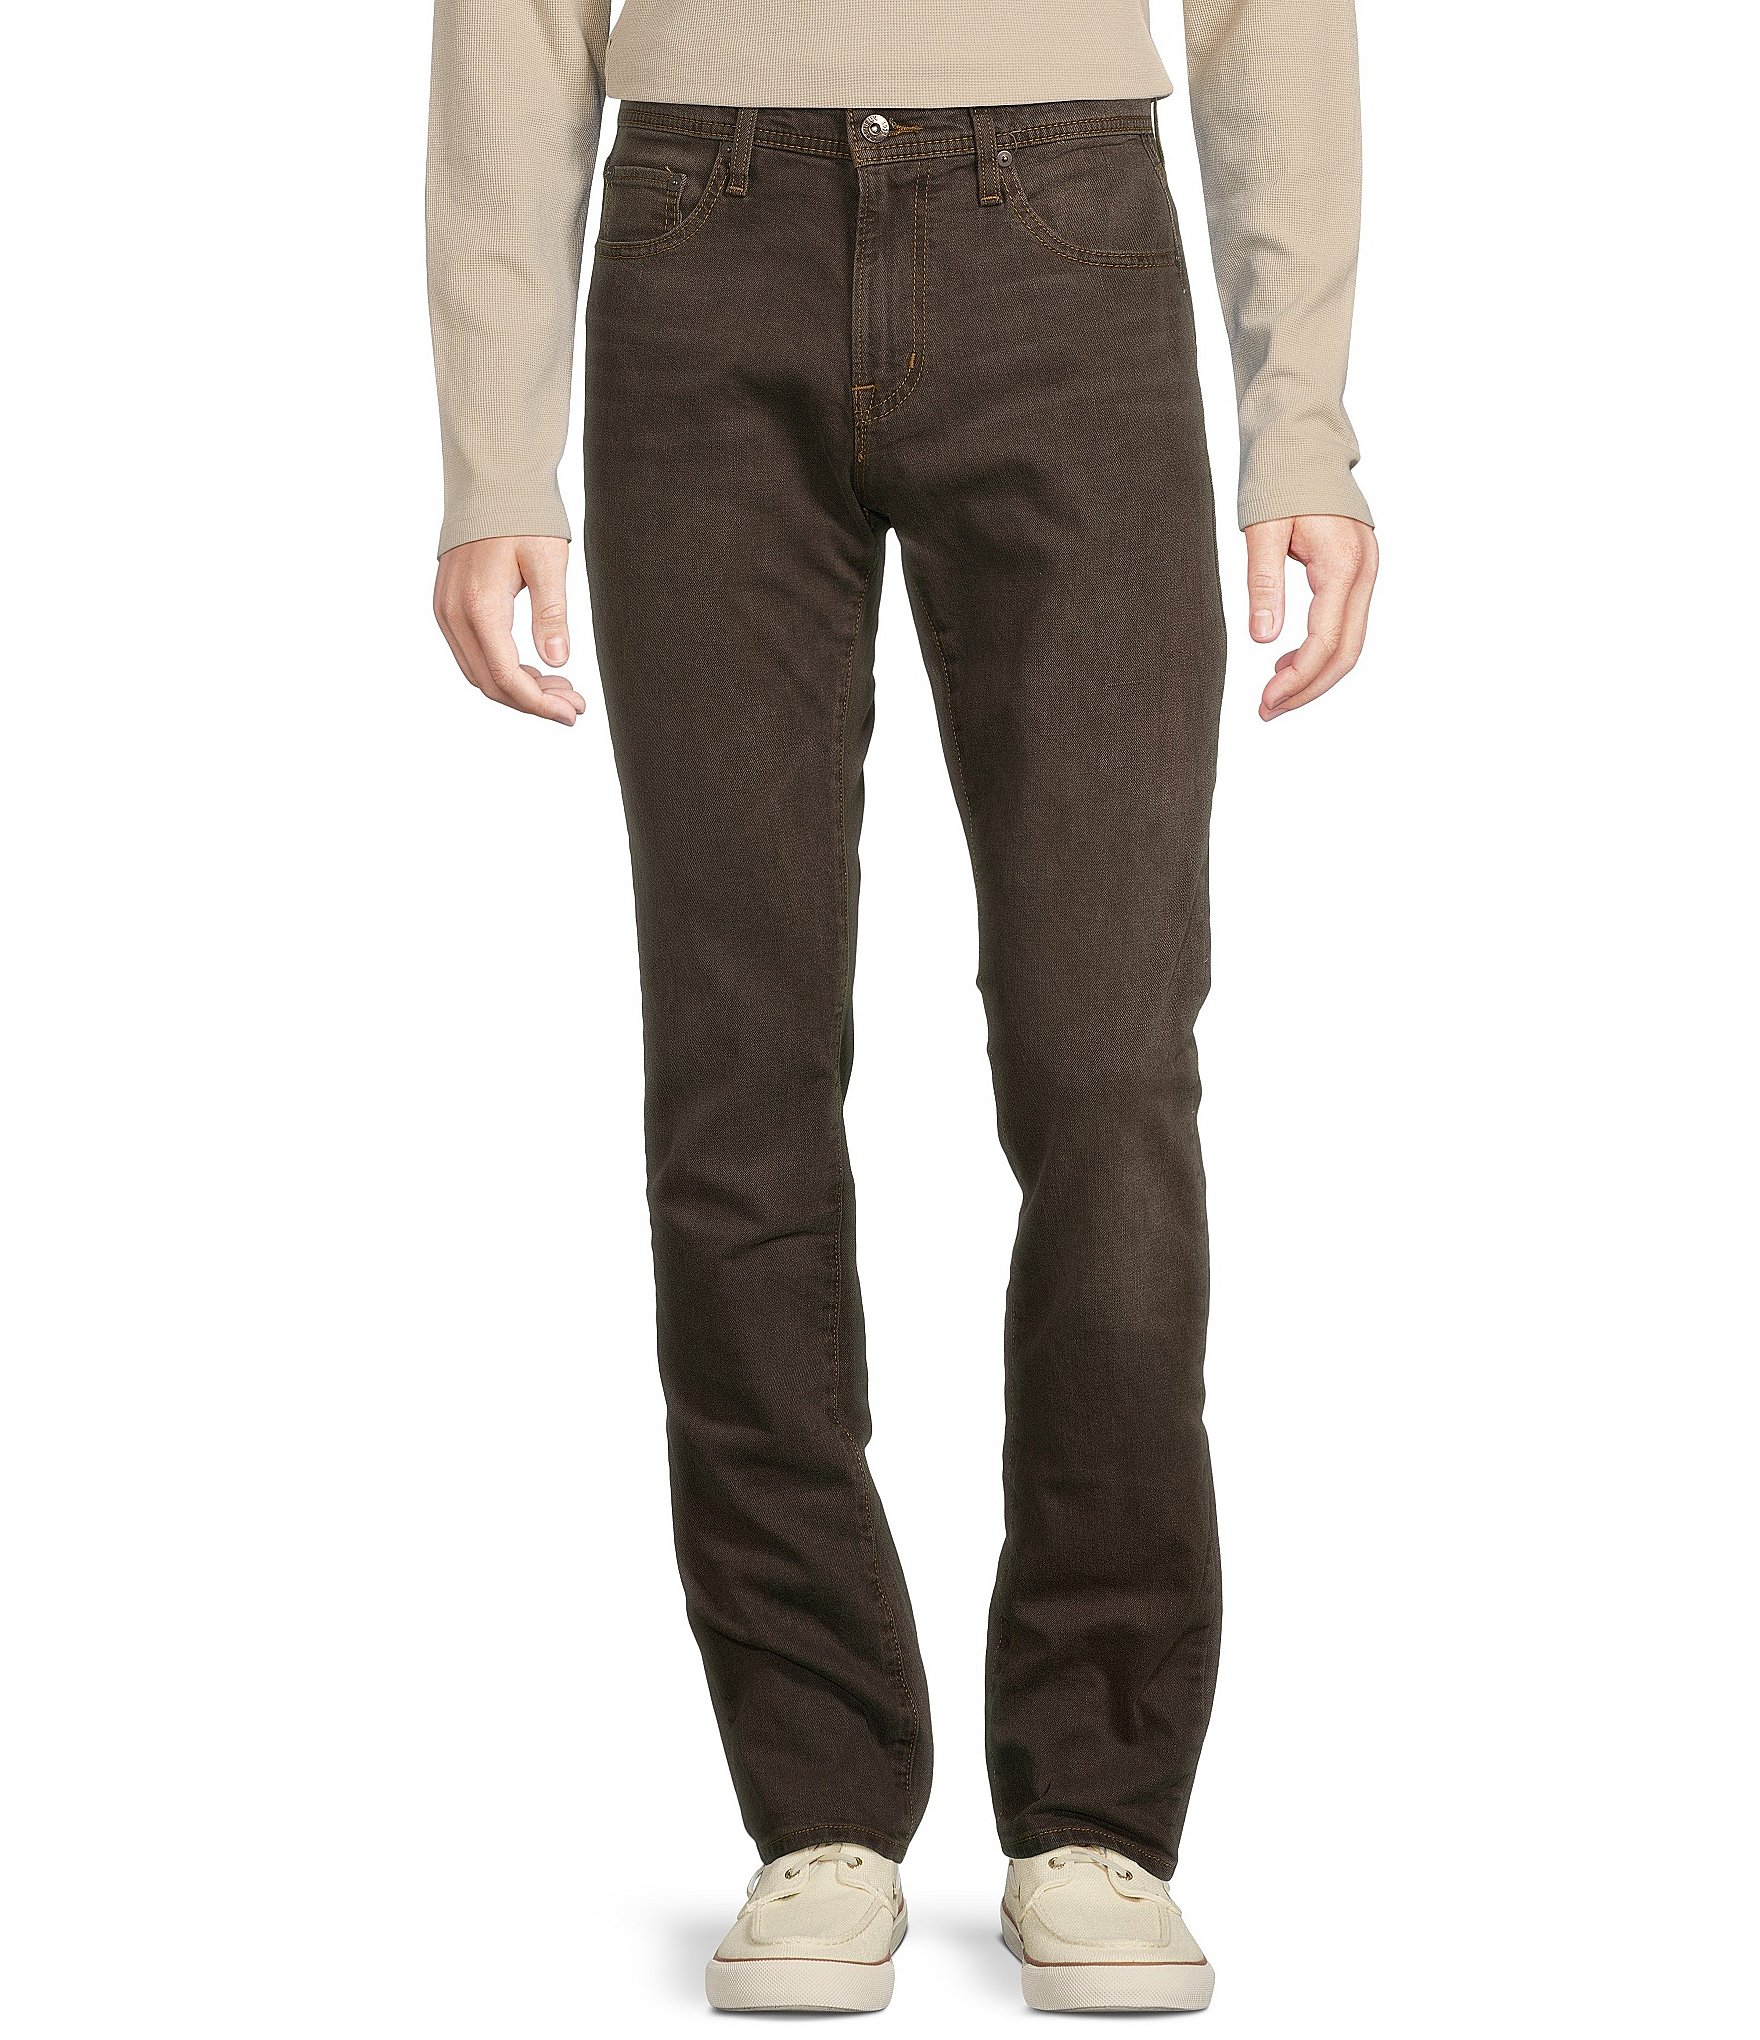 Cremieux Premium Denim Straight Fit Stretch Brown Jeans | Dillard's